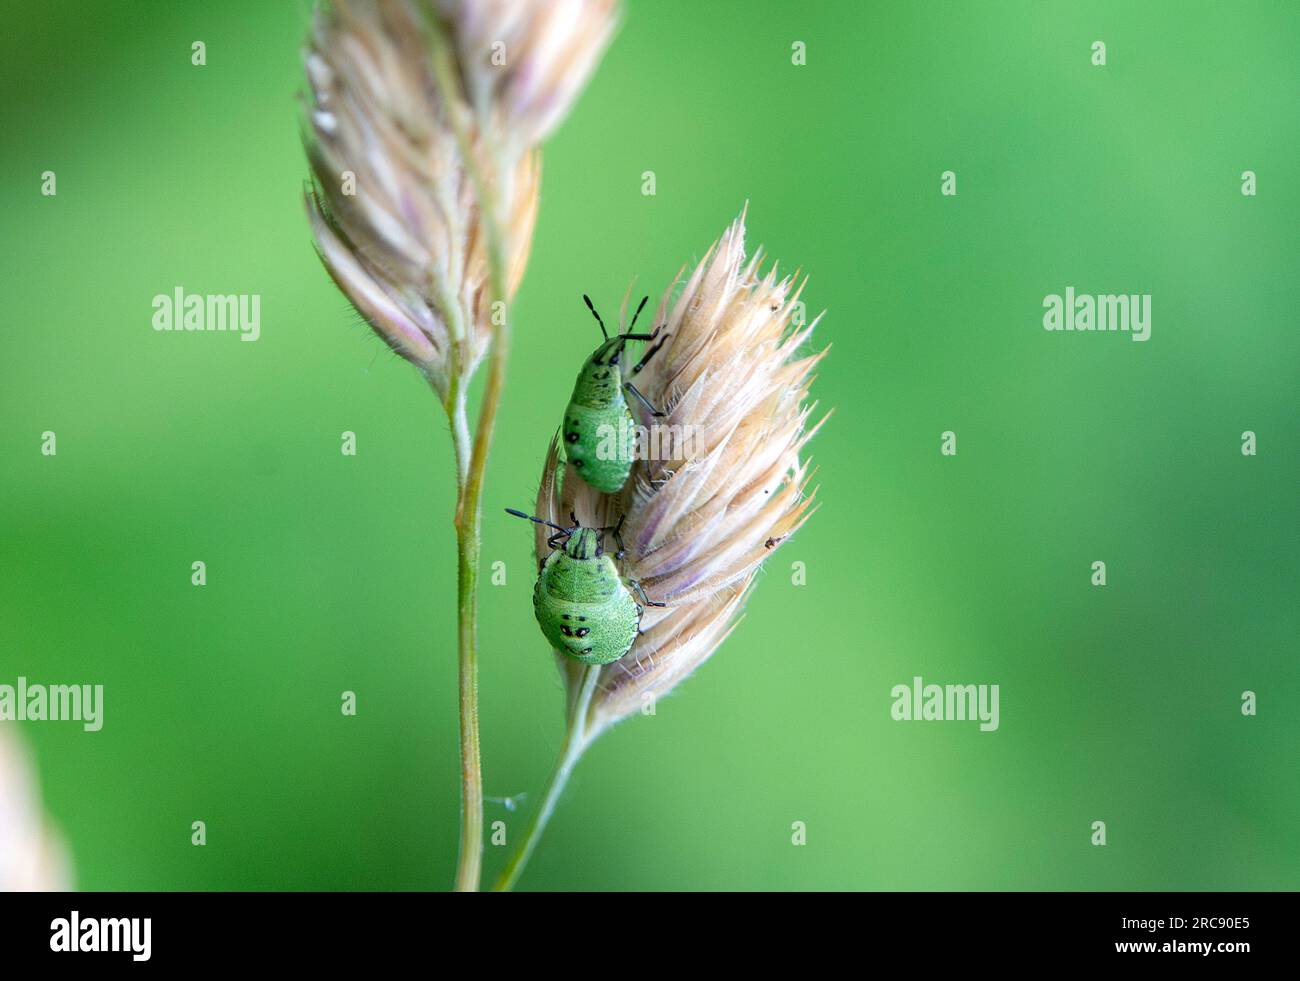 Fotogalerie: Kleine Käfer - ganz groß - [GEO]